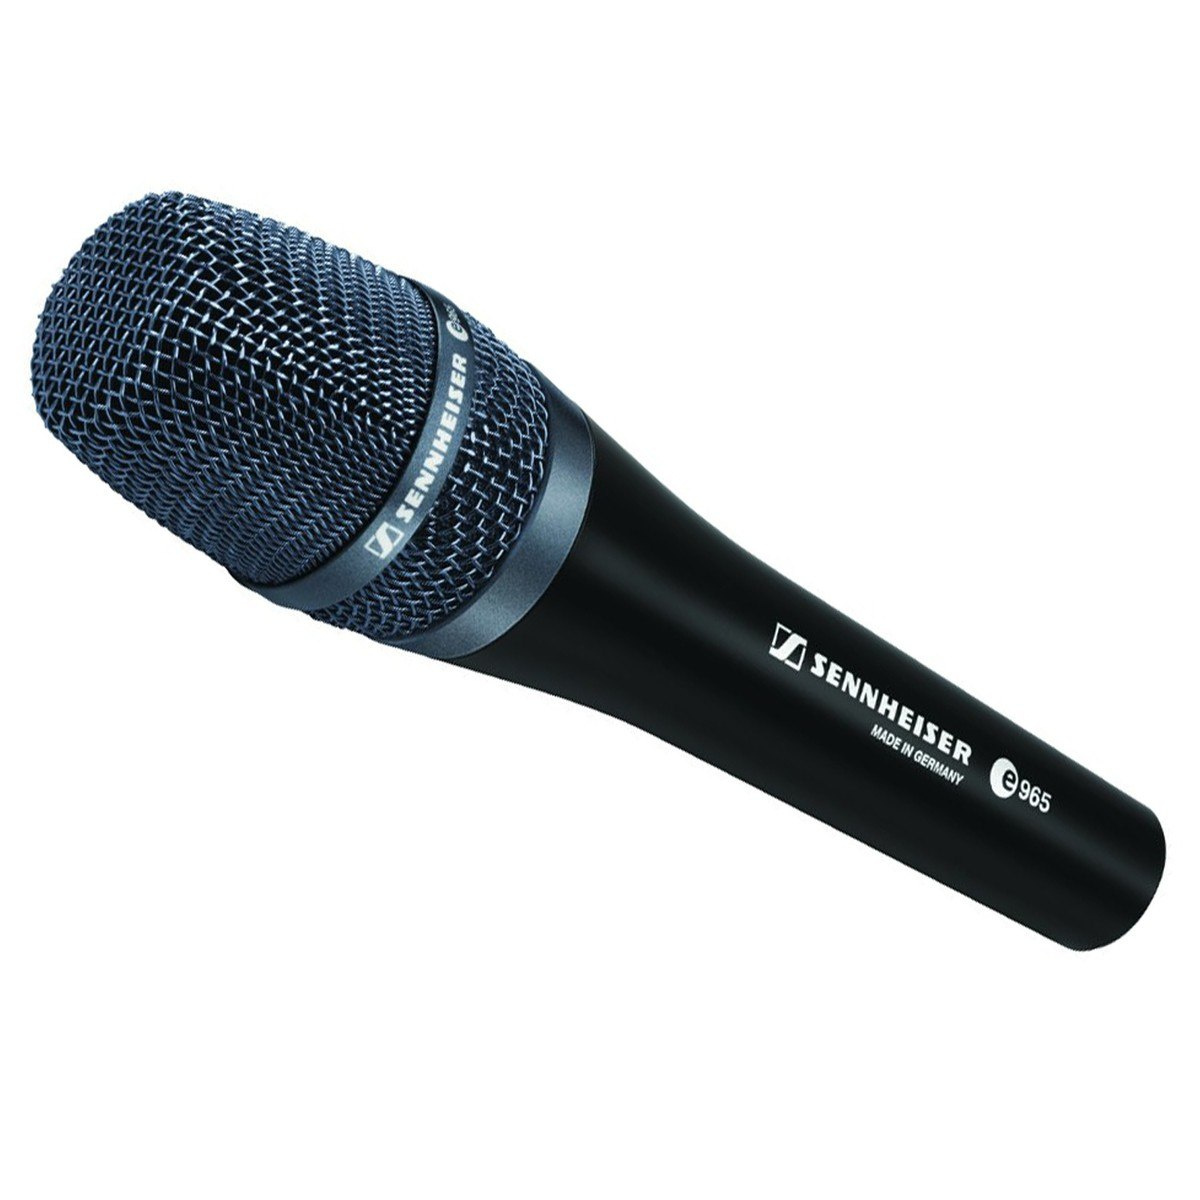 Sennheiser E 965 mikrofon wokalowy z kapsułą pojemnościową